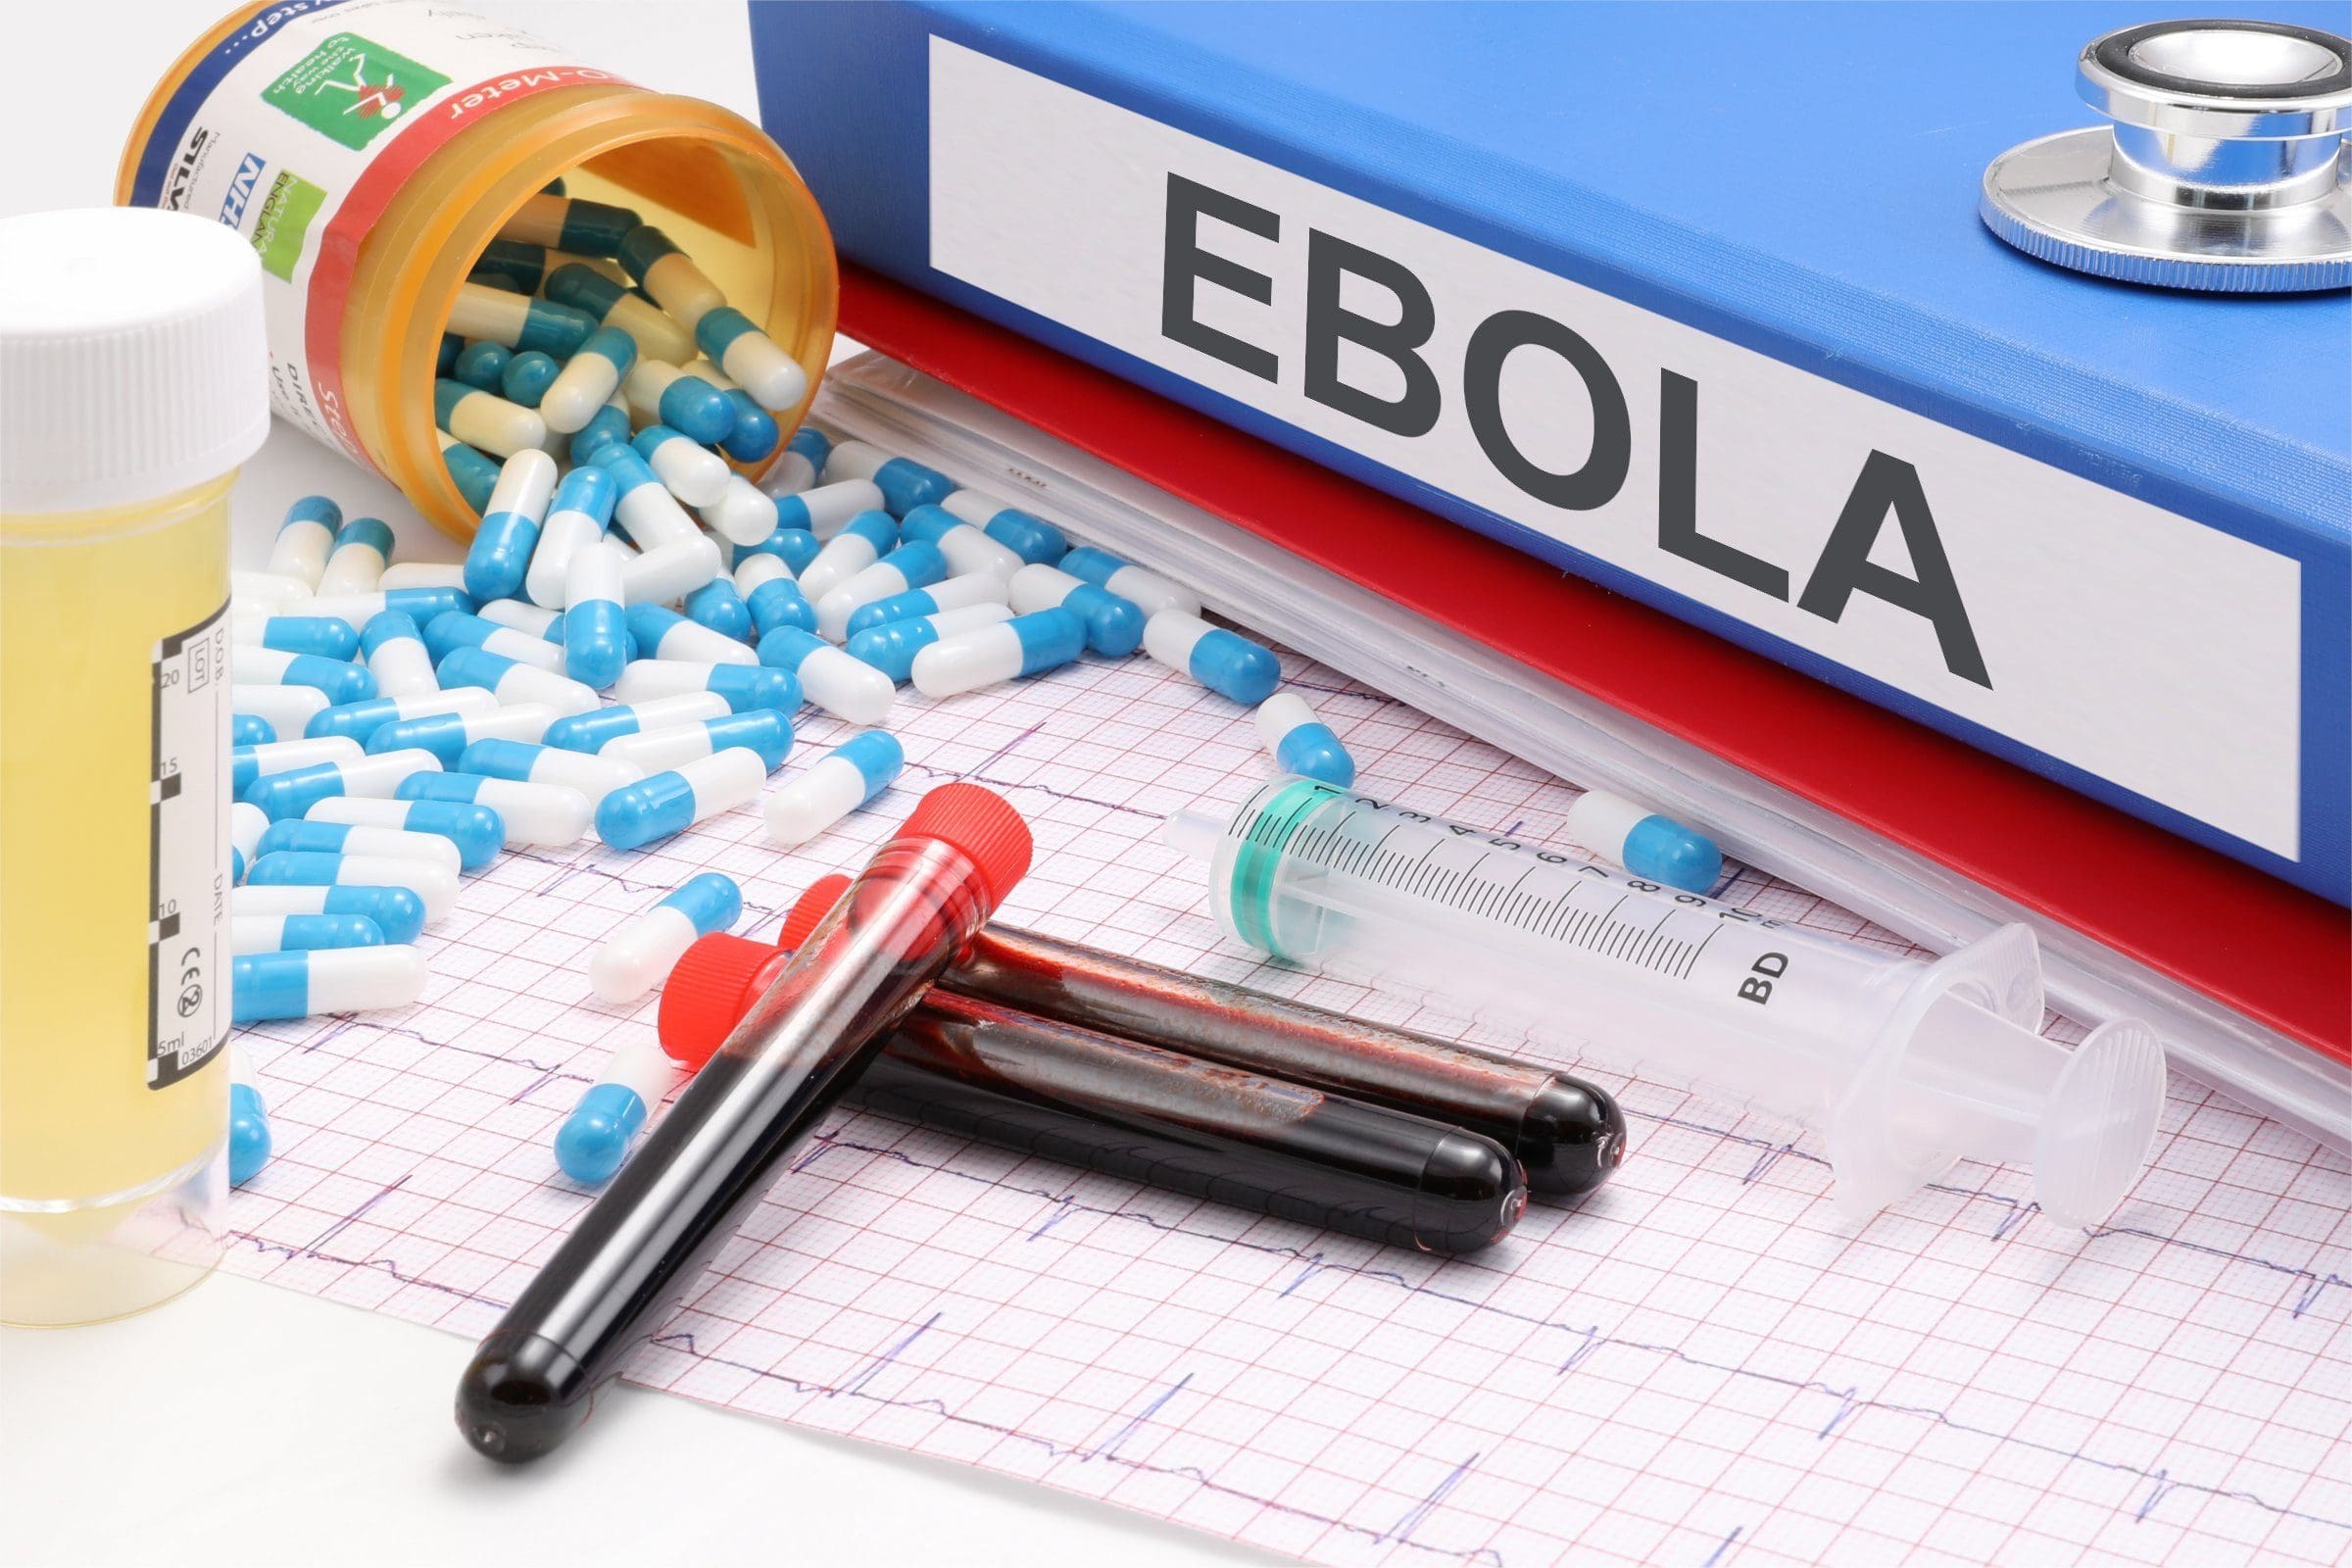 guinea-–-die-ebola-impfstoffstudie-und-die-gemeldeten-zwischenergebnisse-|-stimme-fuer-wissenschaft-und-solidaritaet